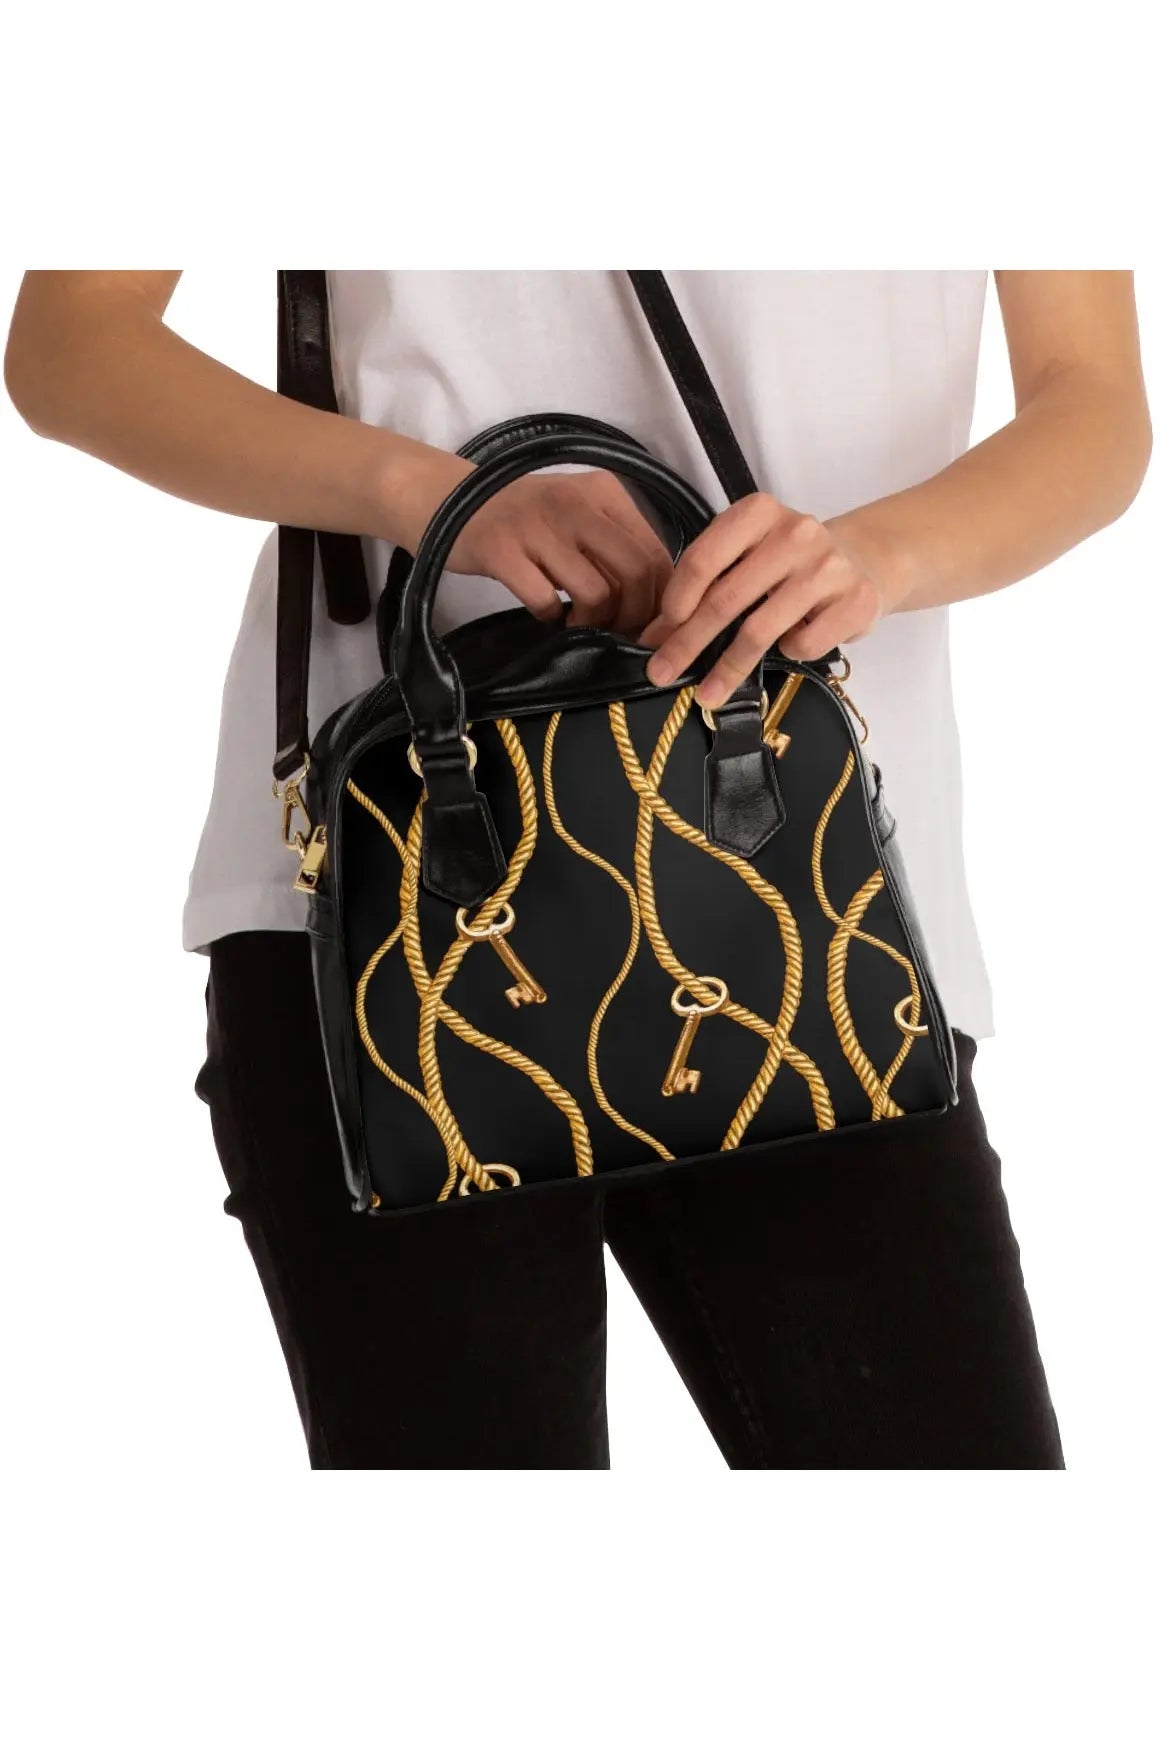 Designer Collection (Chains + Keys) Shoulder Handbag